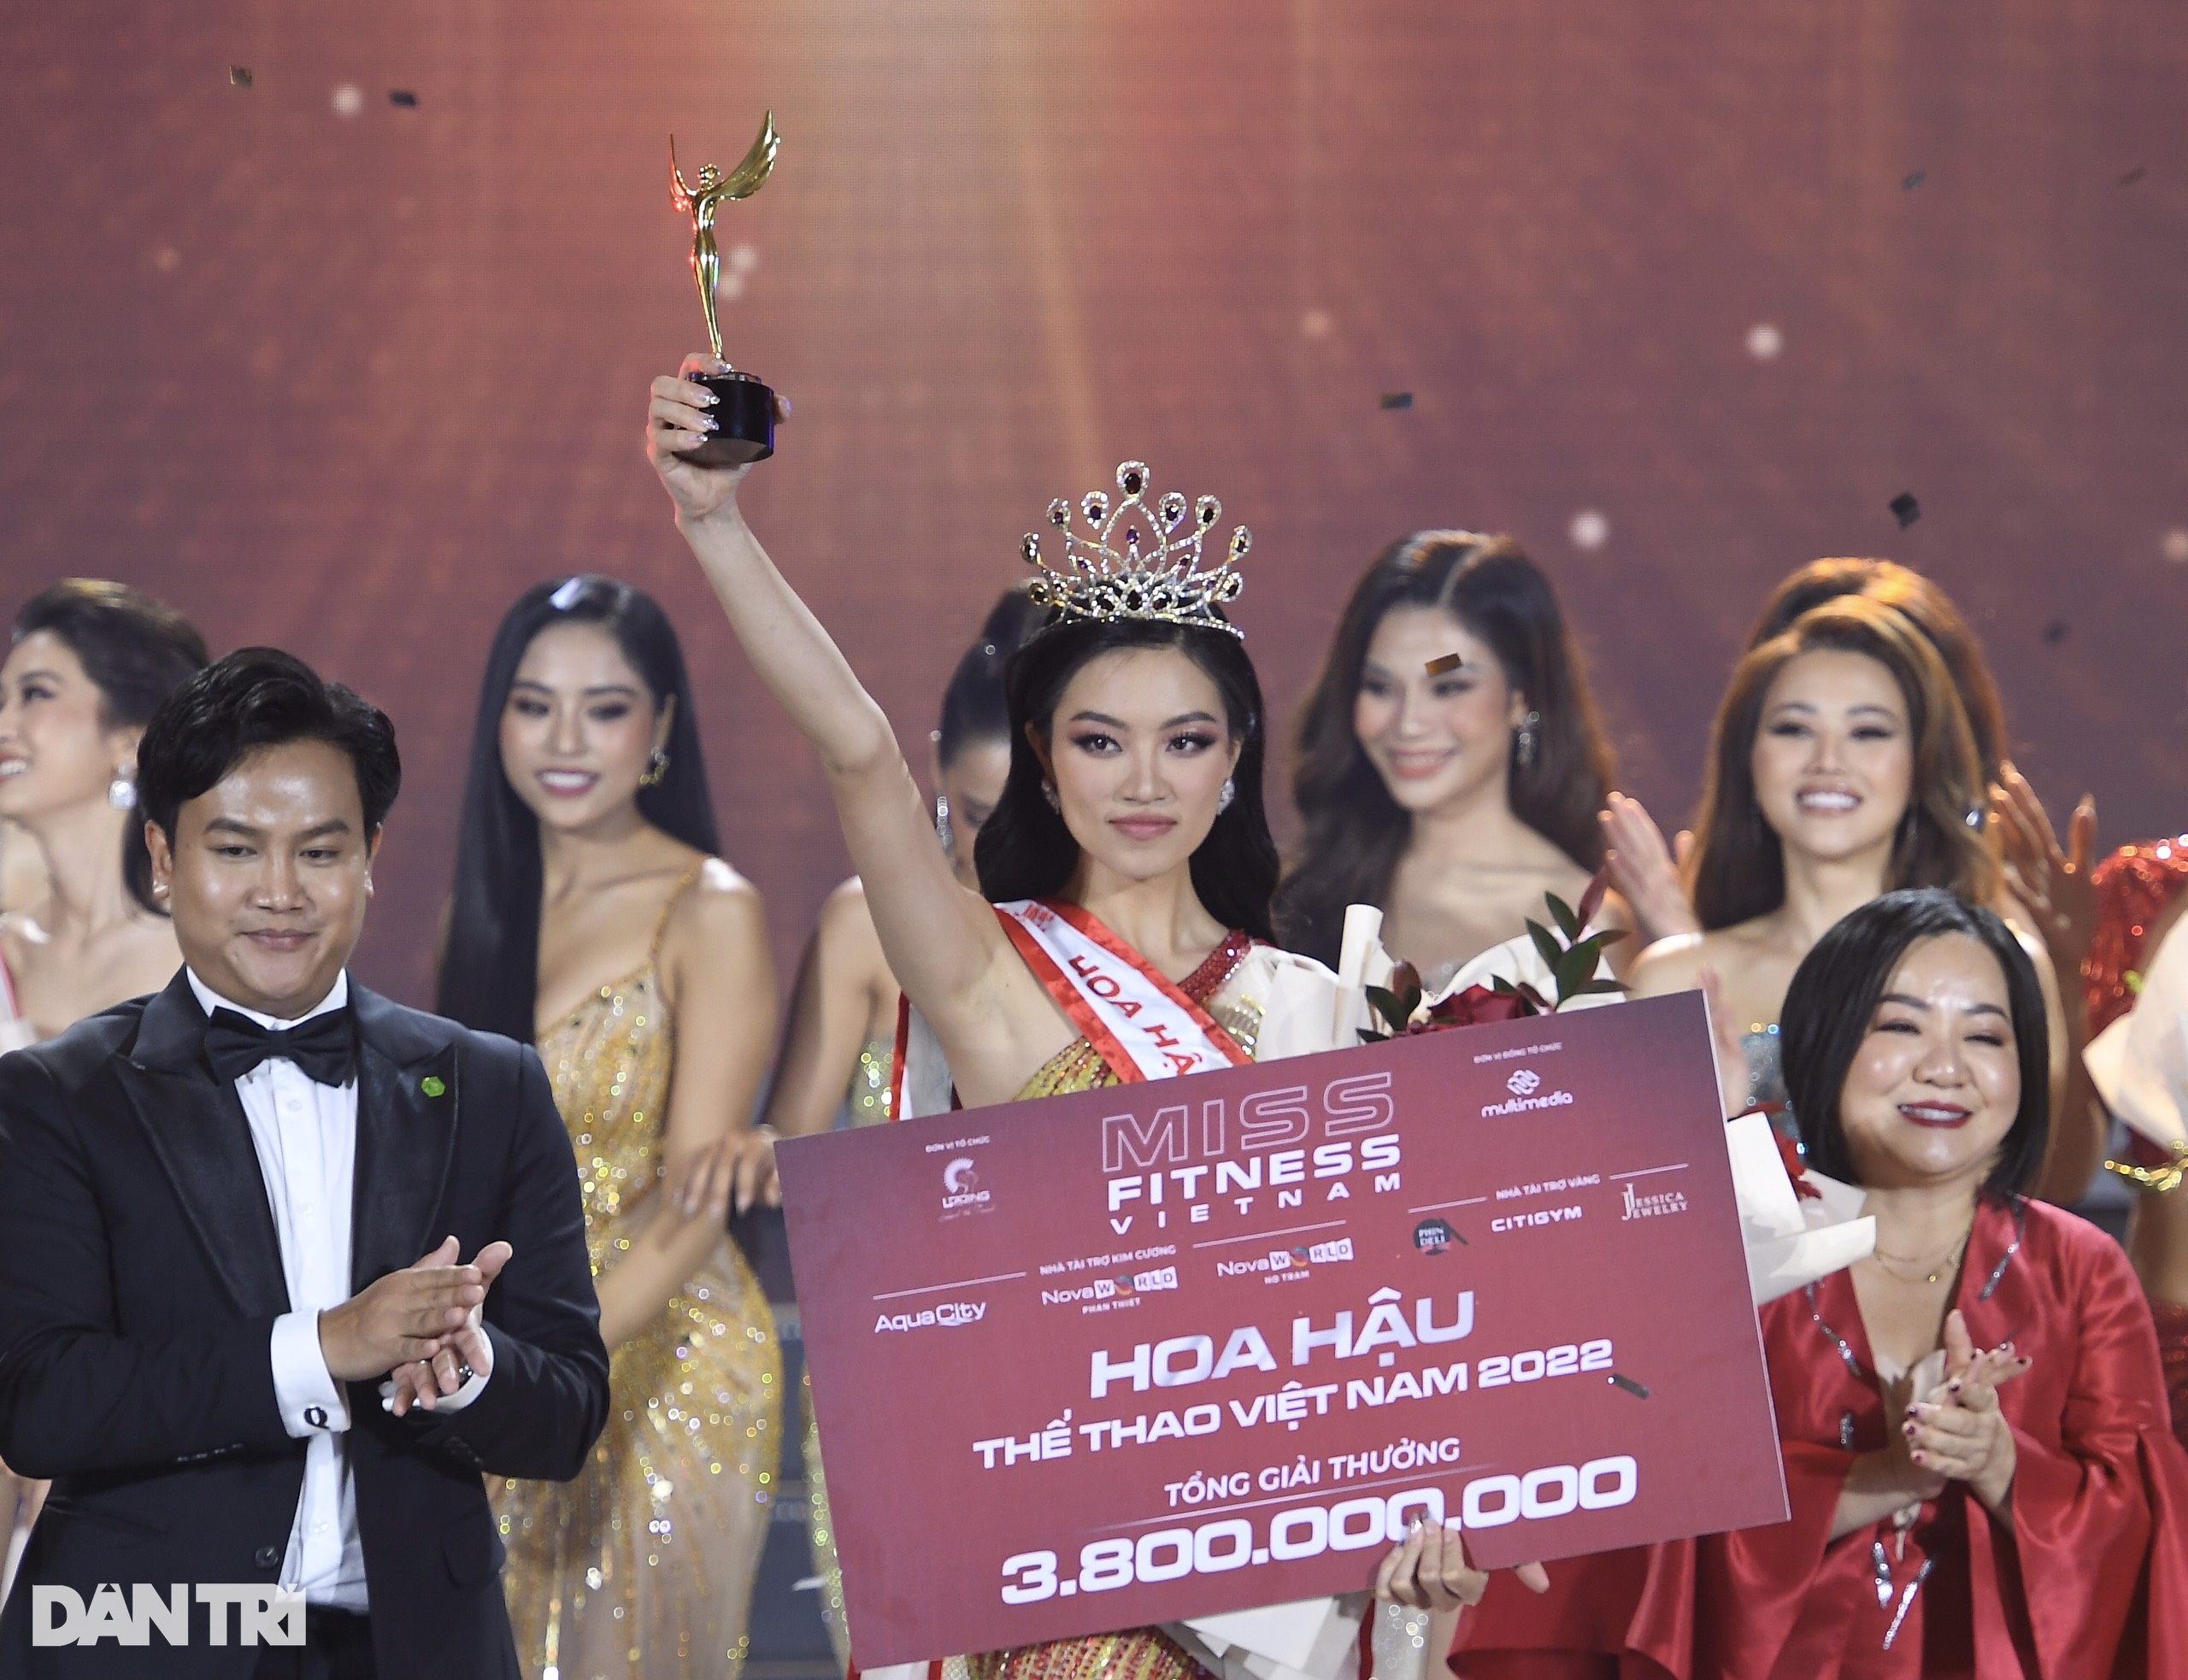 Người đẹp Phú Thọ đăng quang Hoa hậu Thể thao Việt Nam 2022 - 1